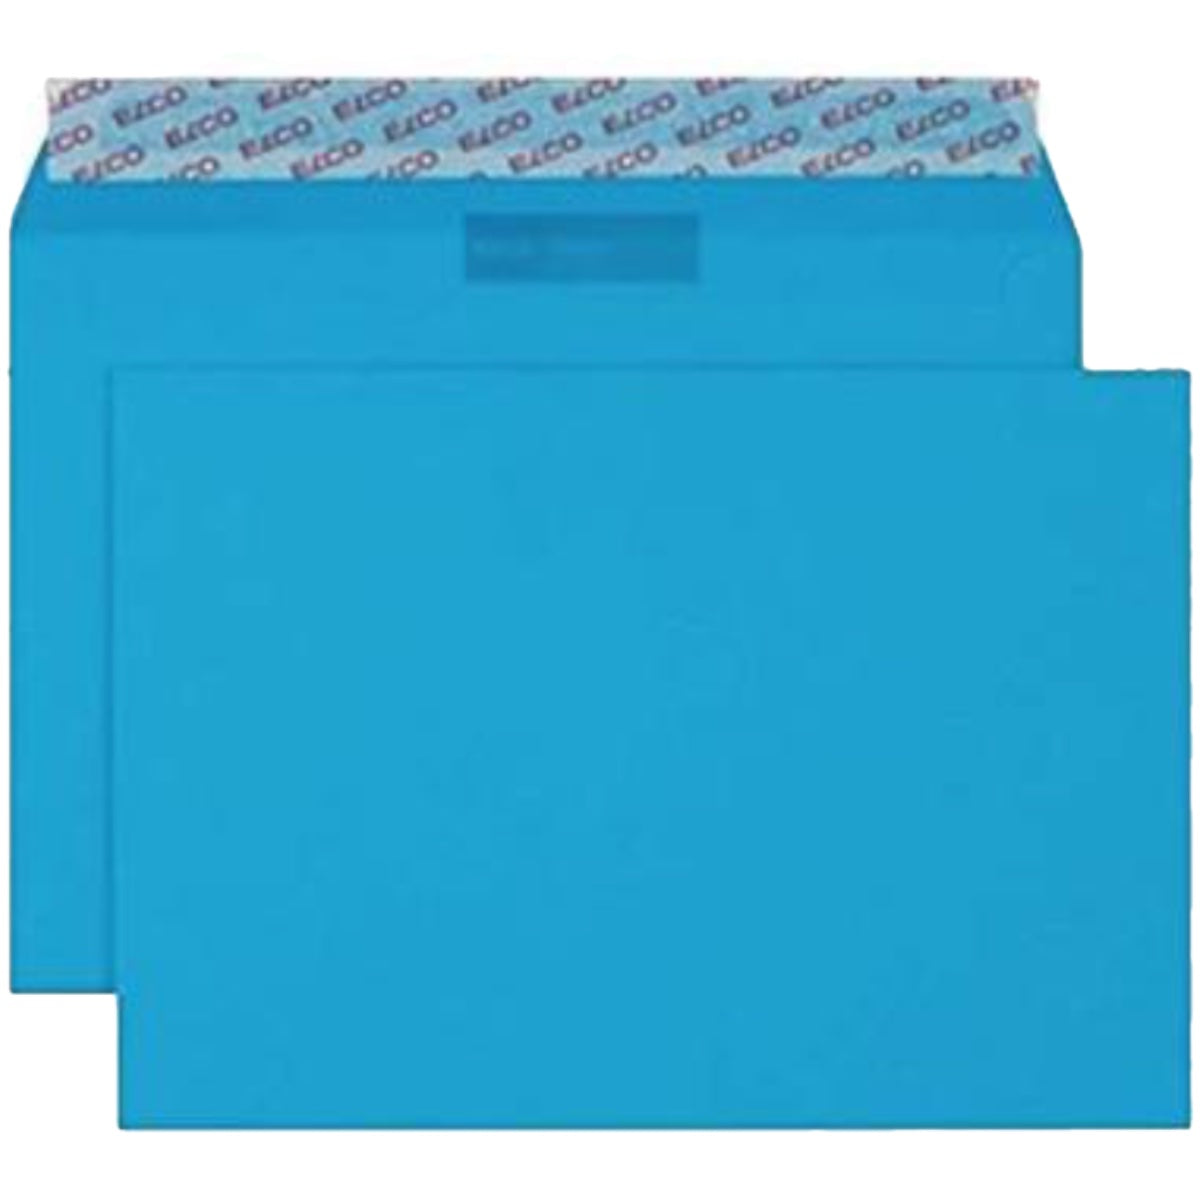 Elco Color Envelope C4, 9" x 12.75", 120g, 50/box, Blue